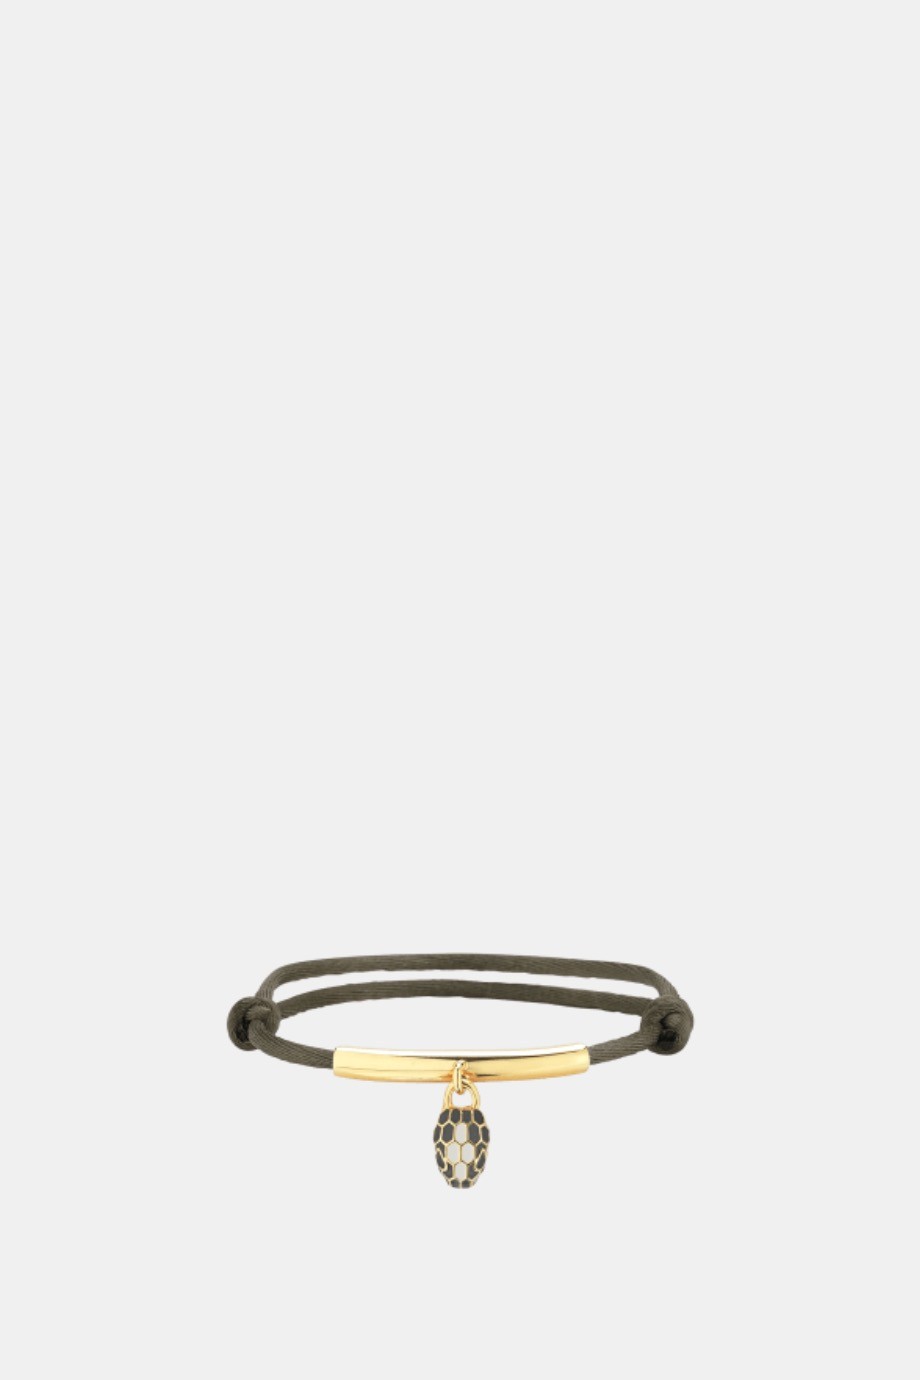 Louis Vuitton - Silver Lockit x Virgil Abloh Bracelet Natural Titanium - Black - Unisex - Luxury